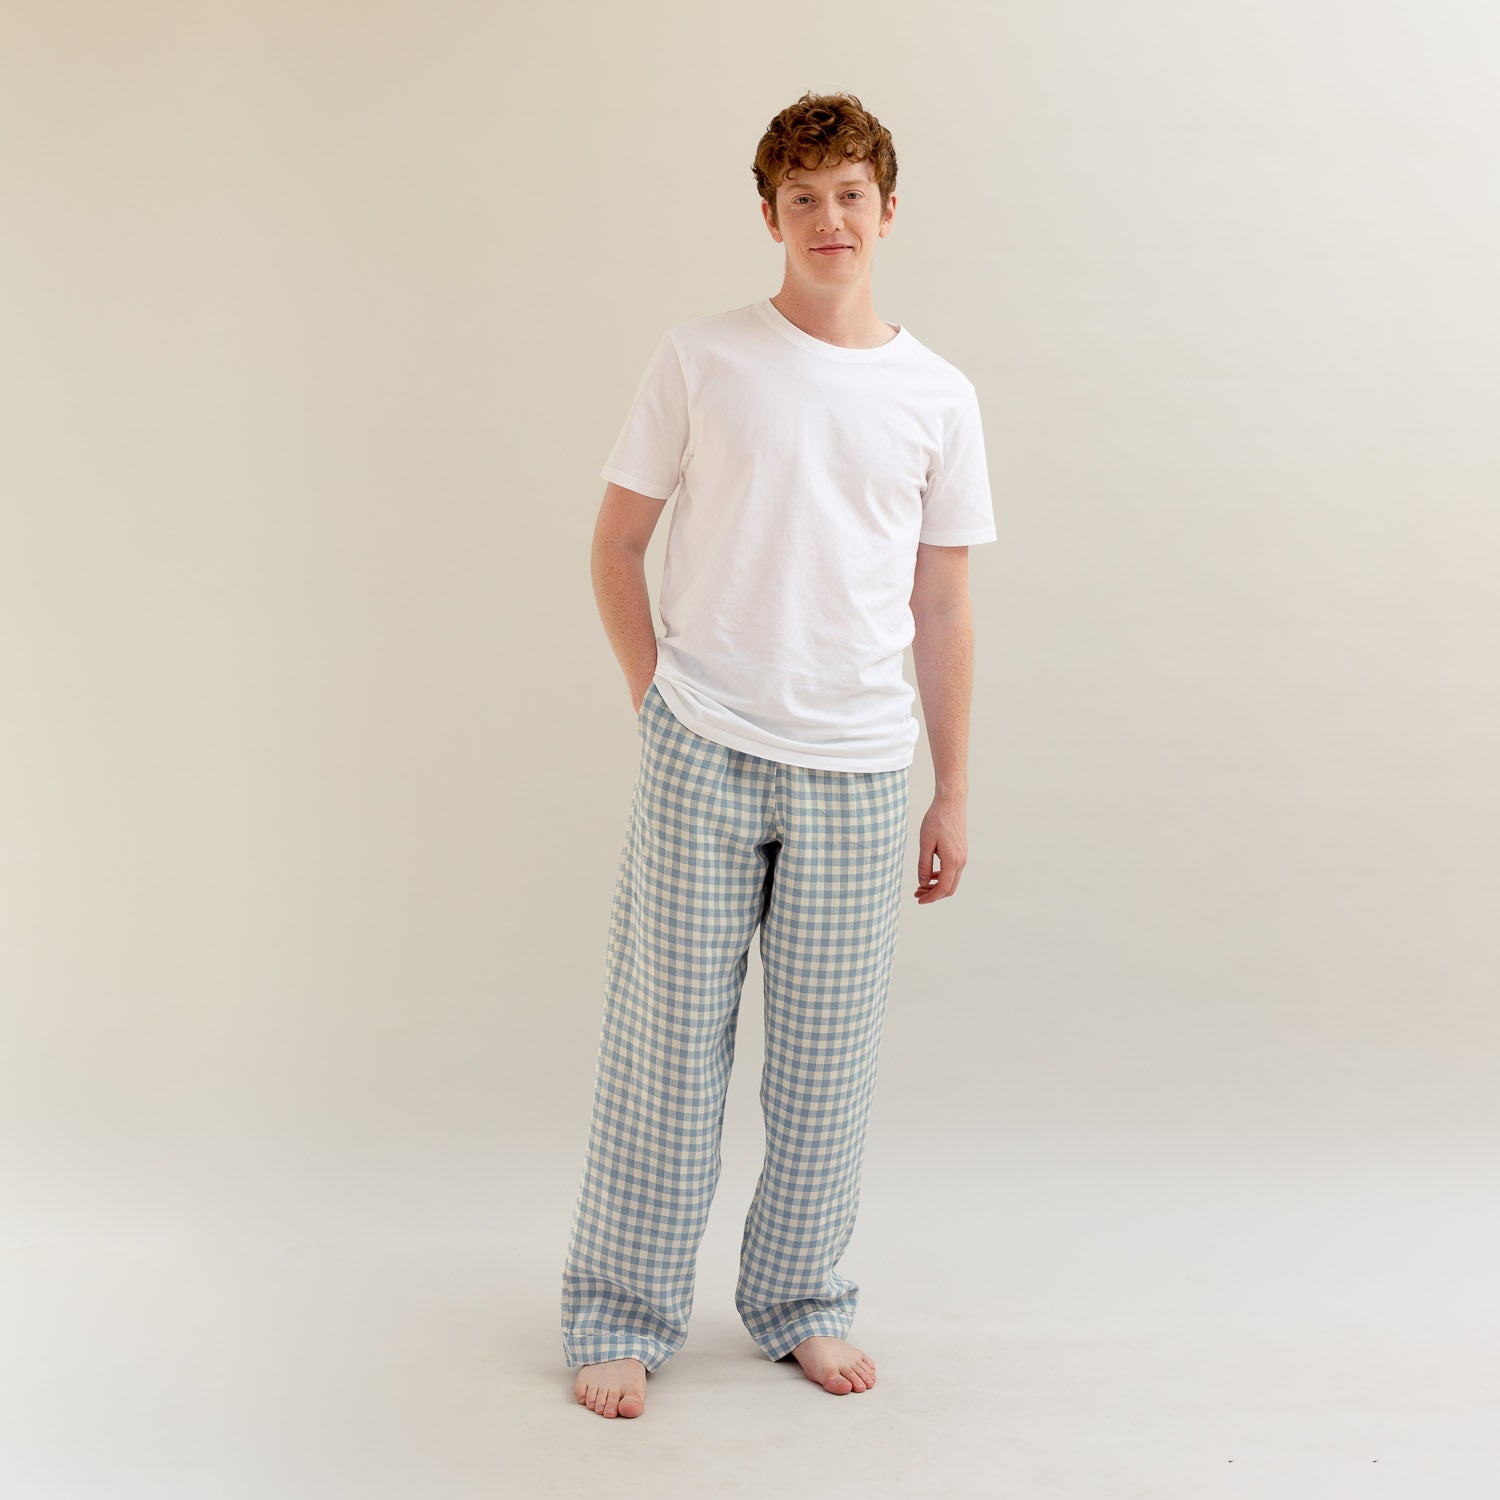 Men's Warm Blue Gingham Linen Pyjama Trousers - Piglet in Bed